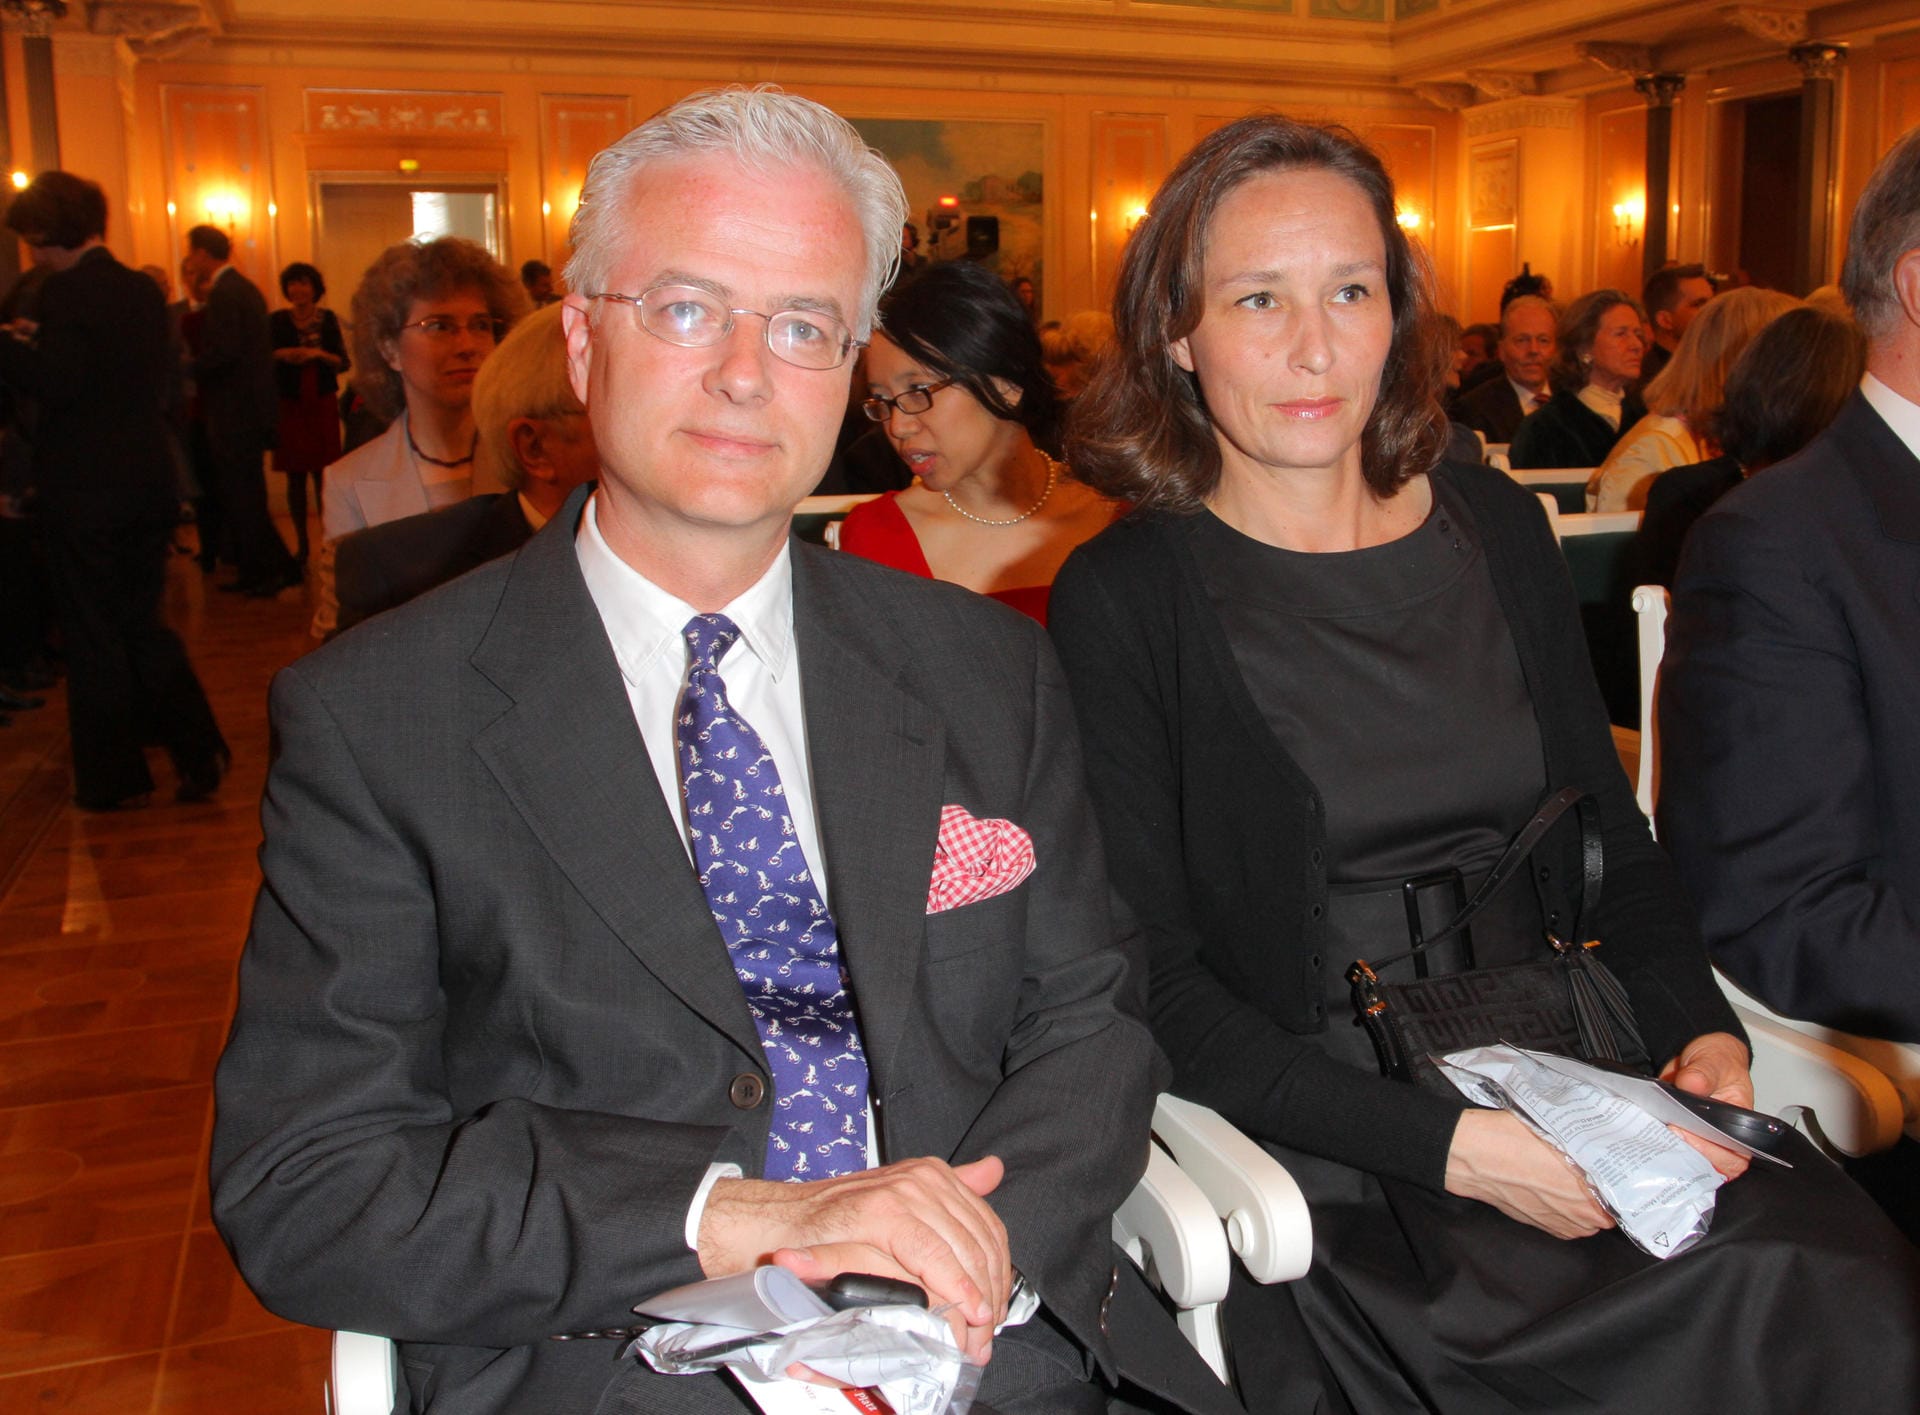 2010 beim 90. Geburtstag von Richard von Weizsäcker im Konzerthaus am Gendarmenmarkt in Berlin: Prof. Dr. med. Fritz von Weizsaecker mit seiner Ehefrau Katja.